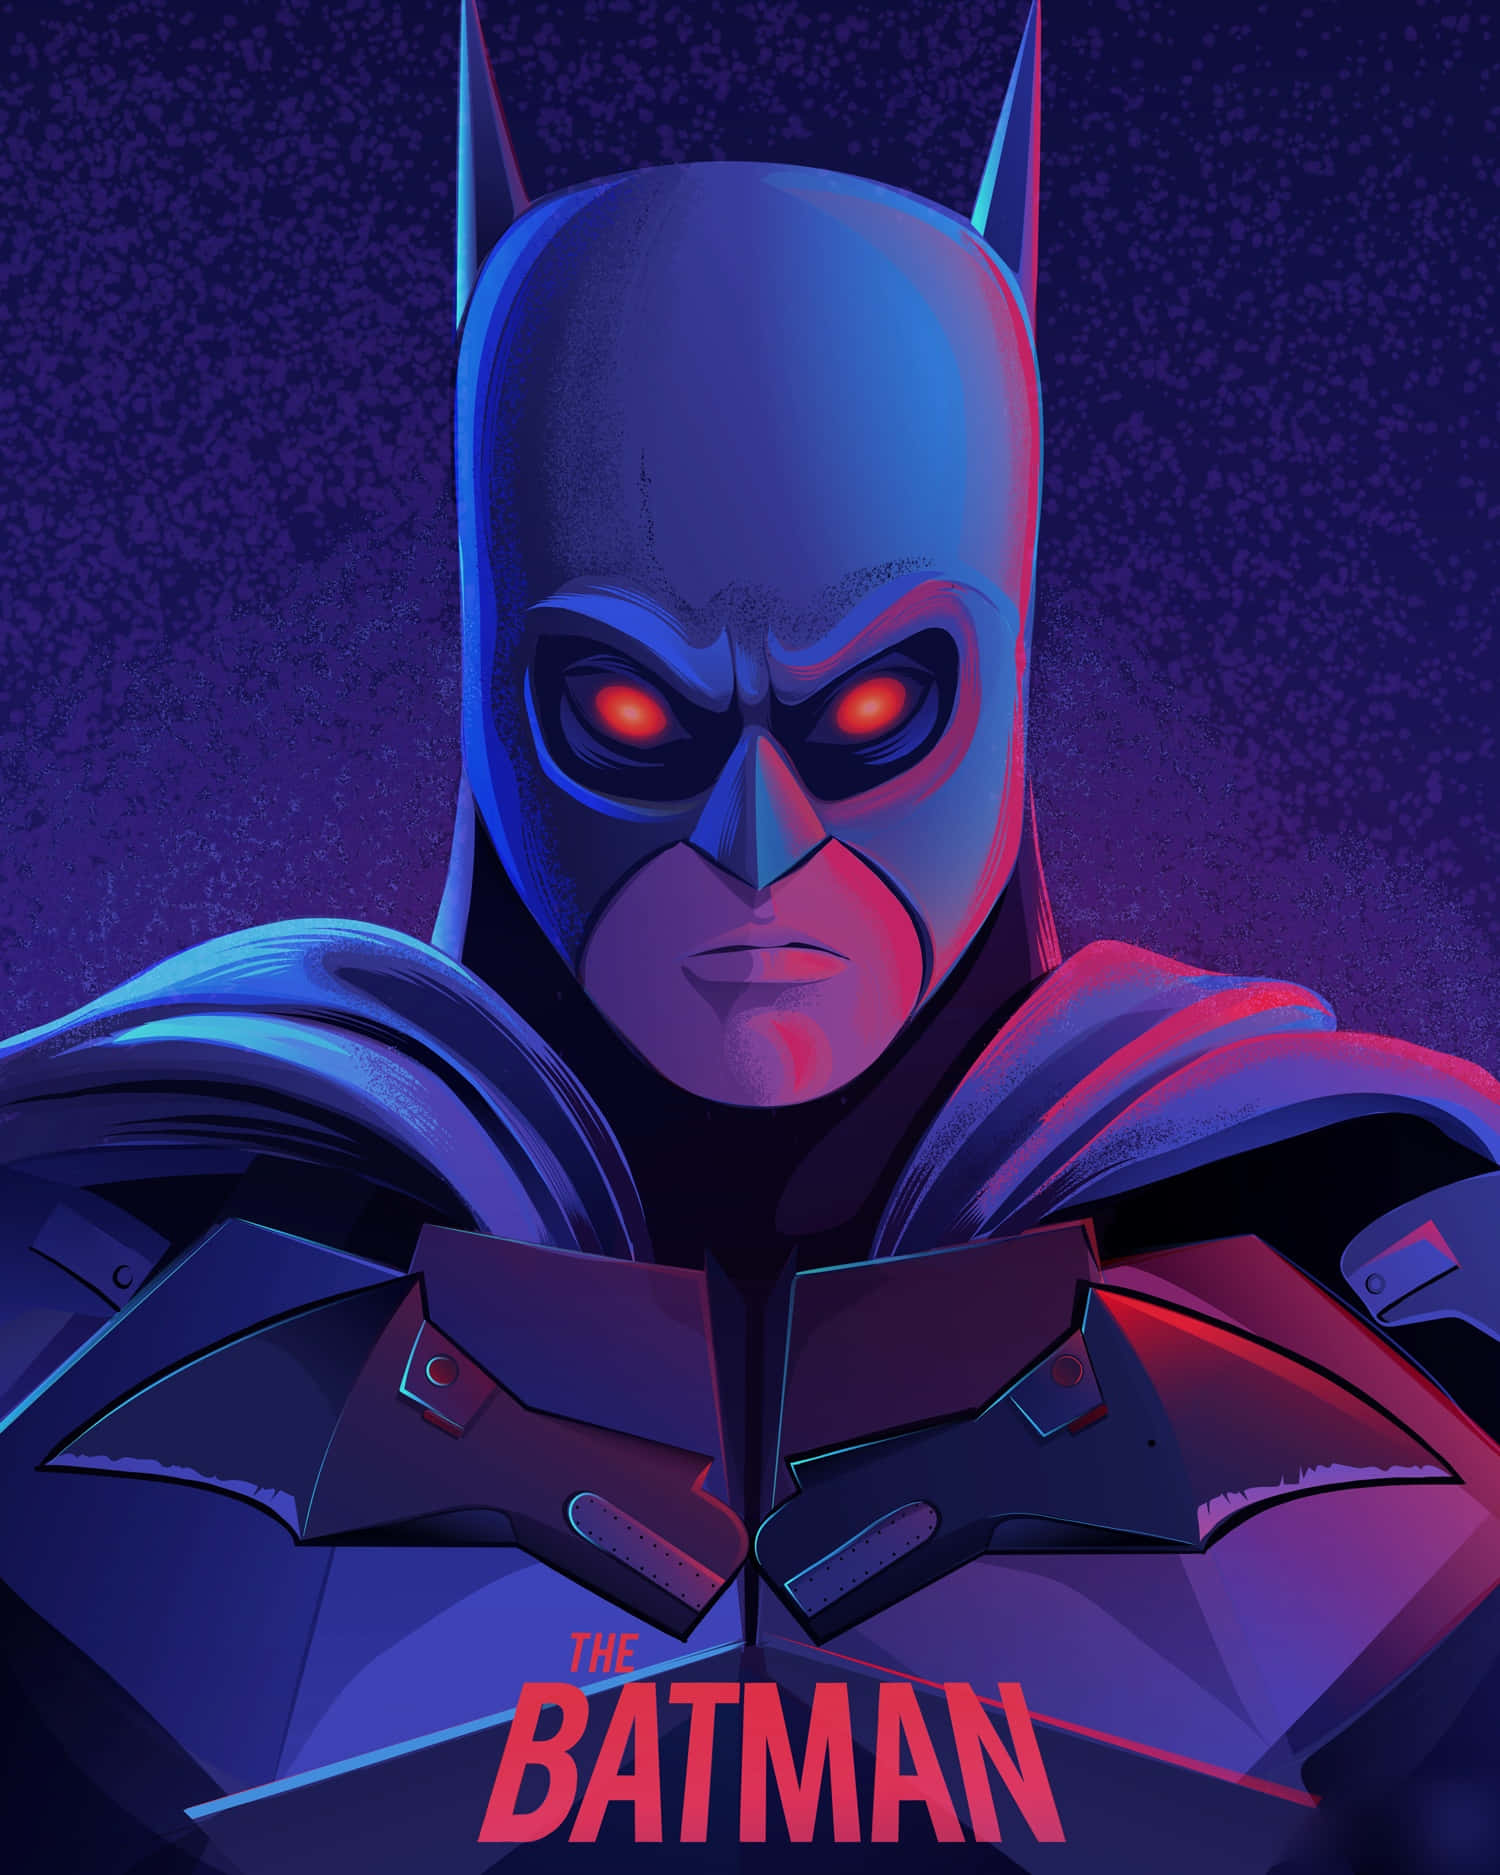 Immagineartistica Di Batman In Stile Vaporwave